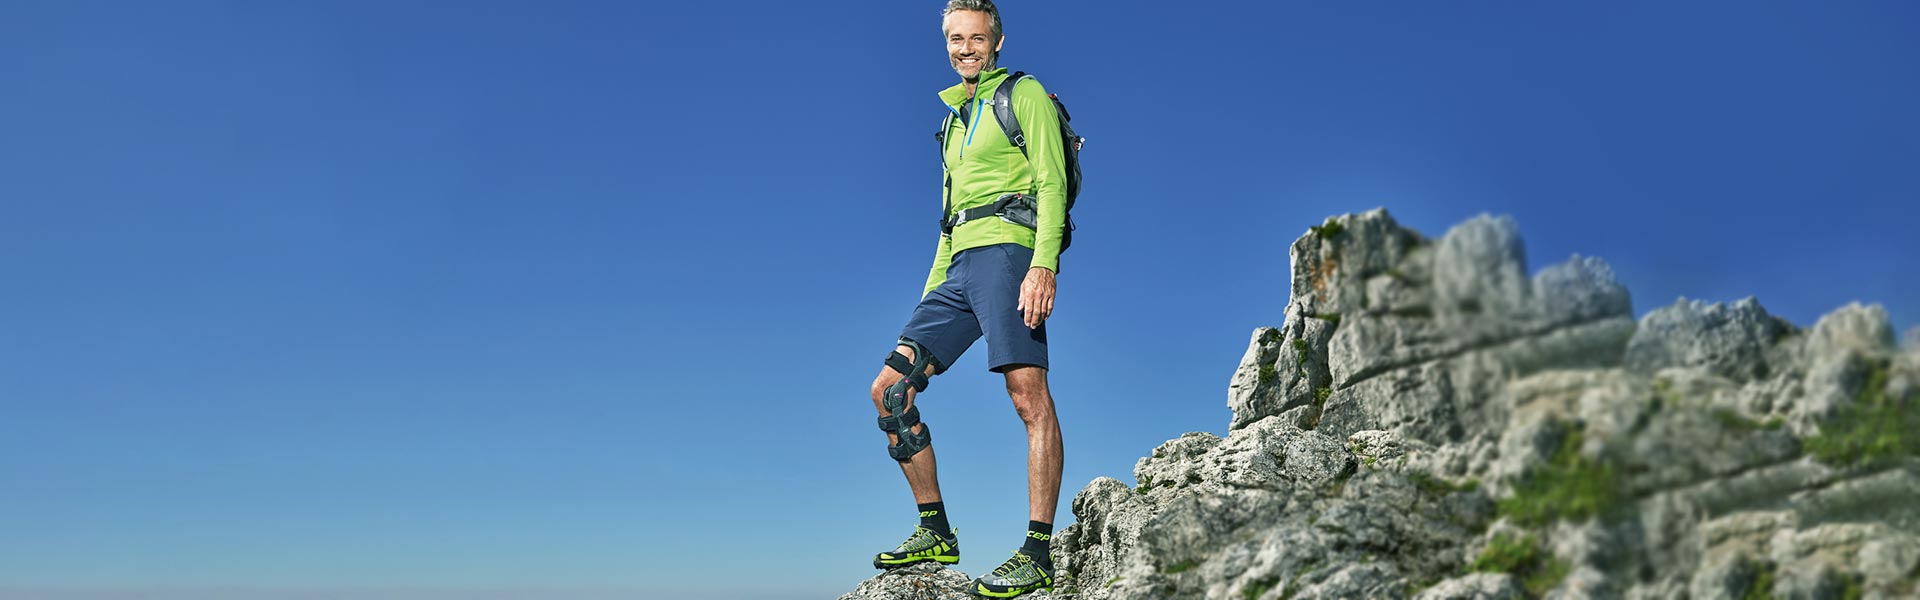 Orthopädie-Schuhtechnik Schwörer in Neustadt- eine Orthese hilft beim Berg erklimmen